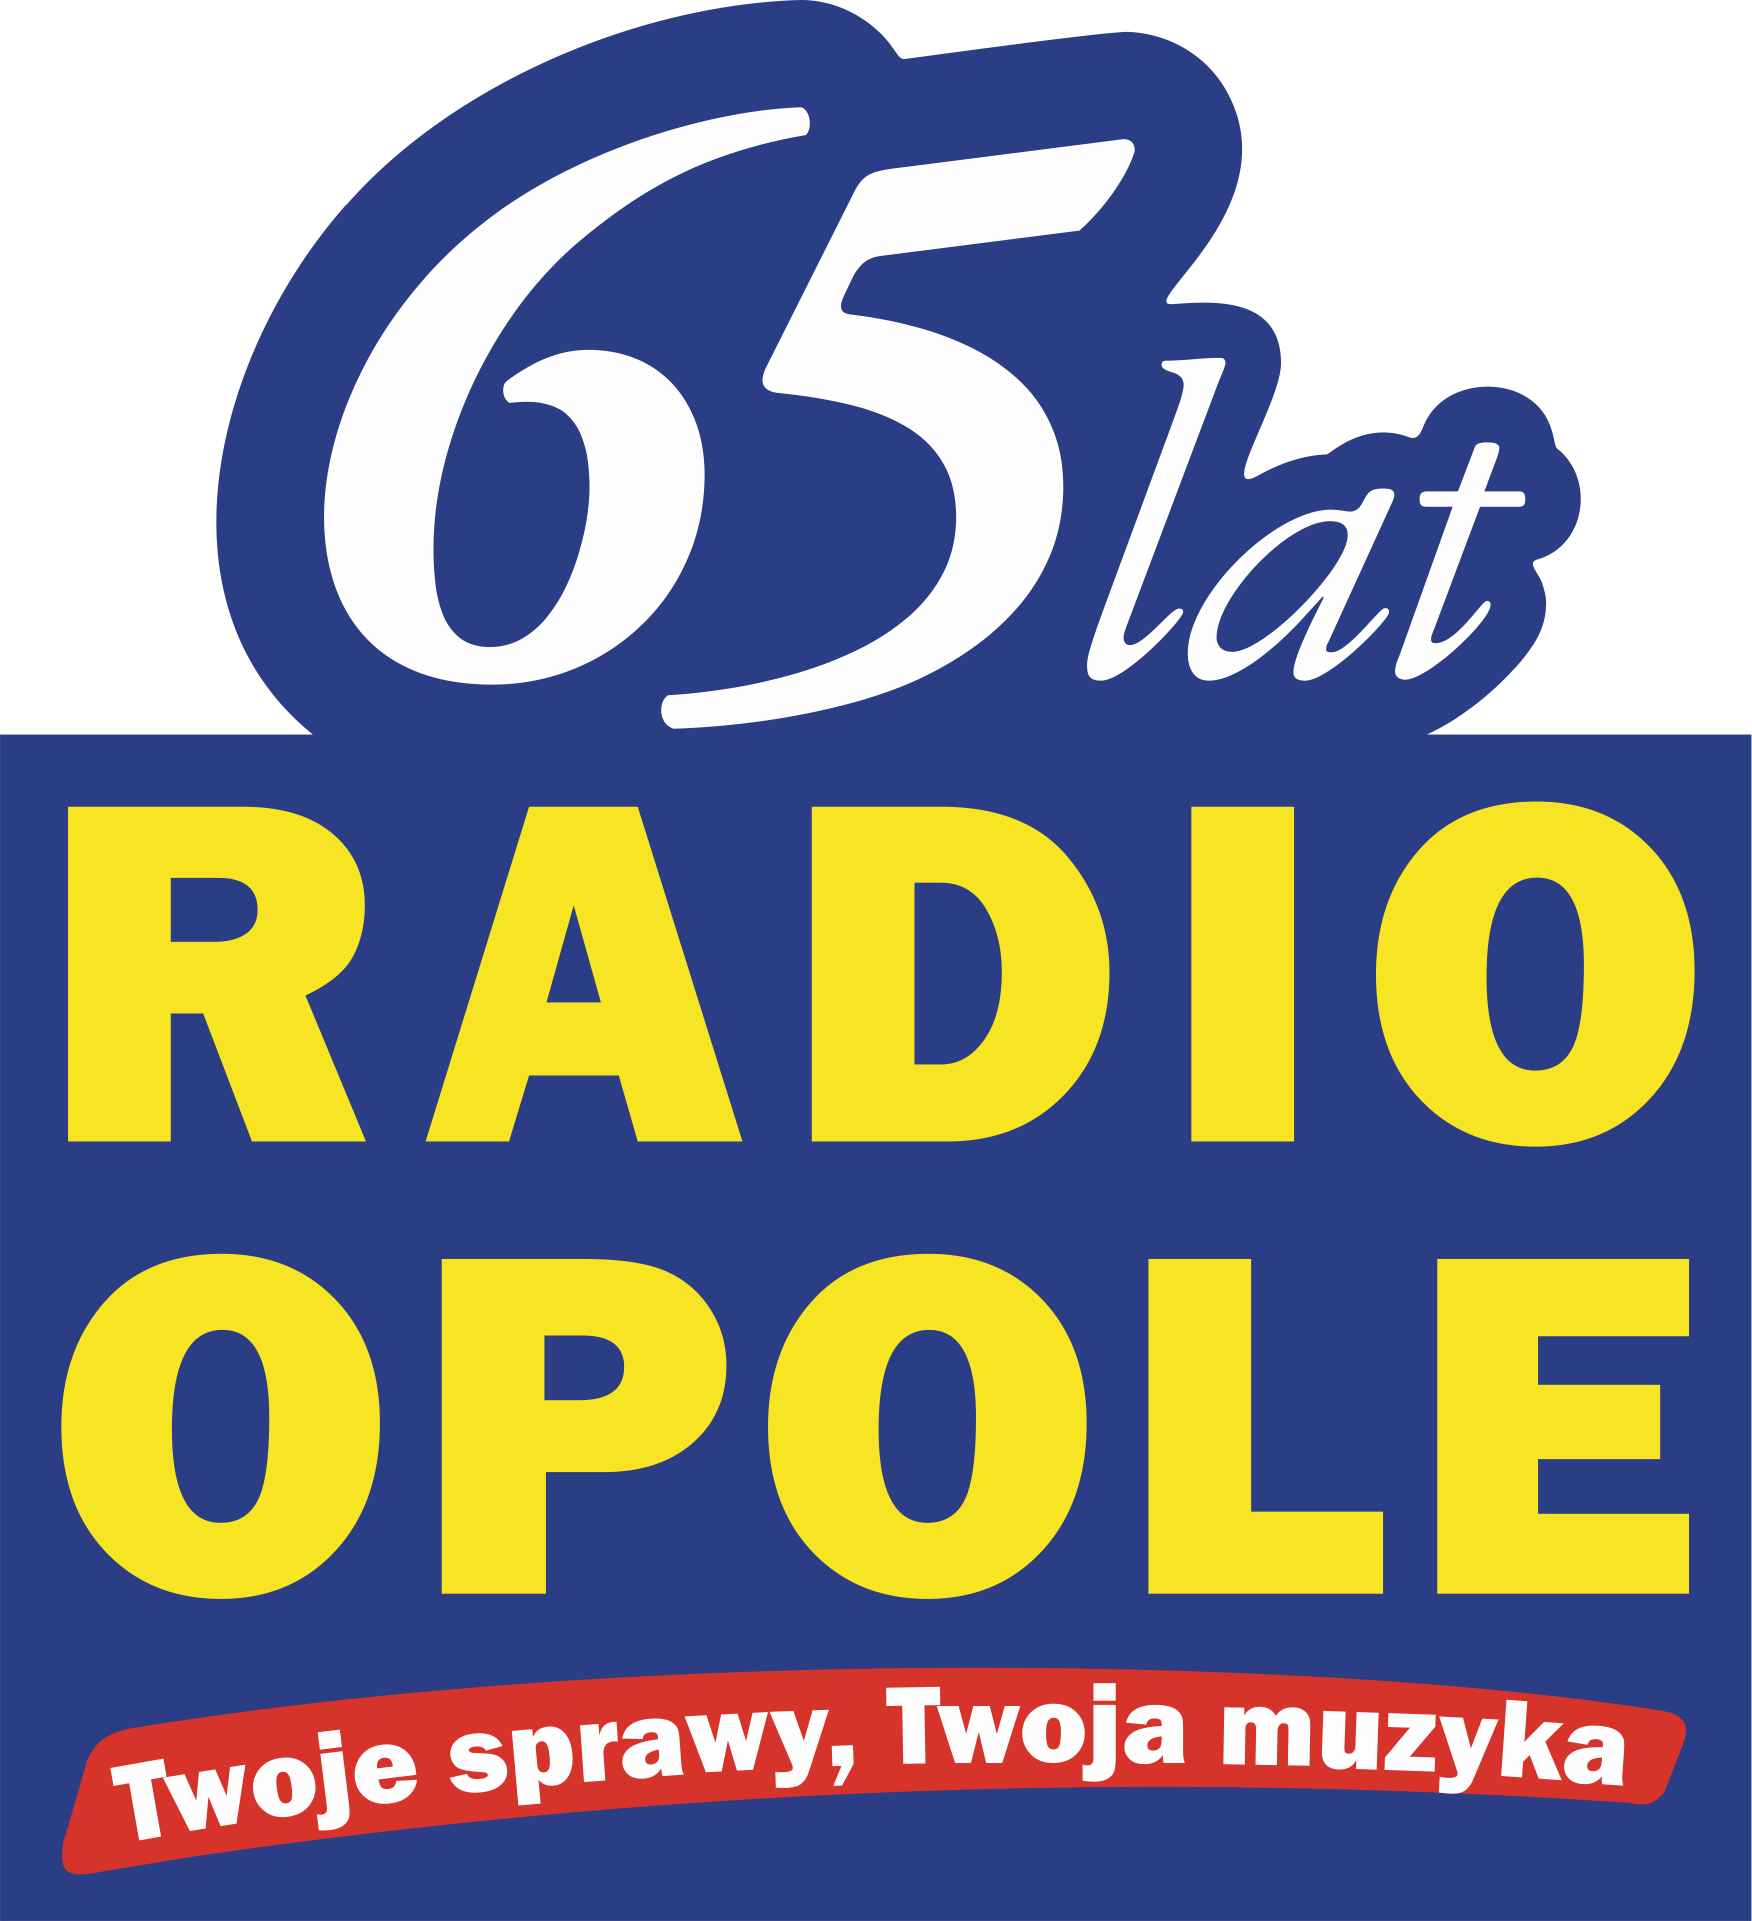 Radio Opole logo 65 lat duze